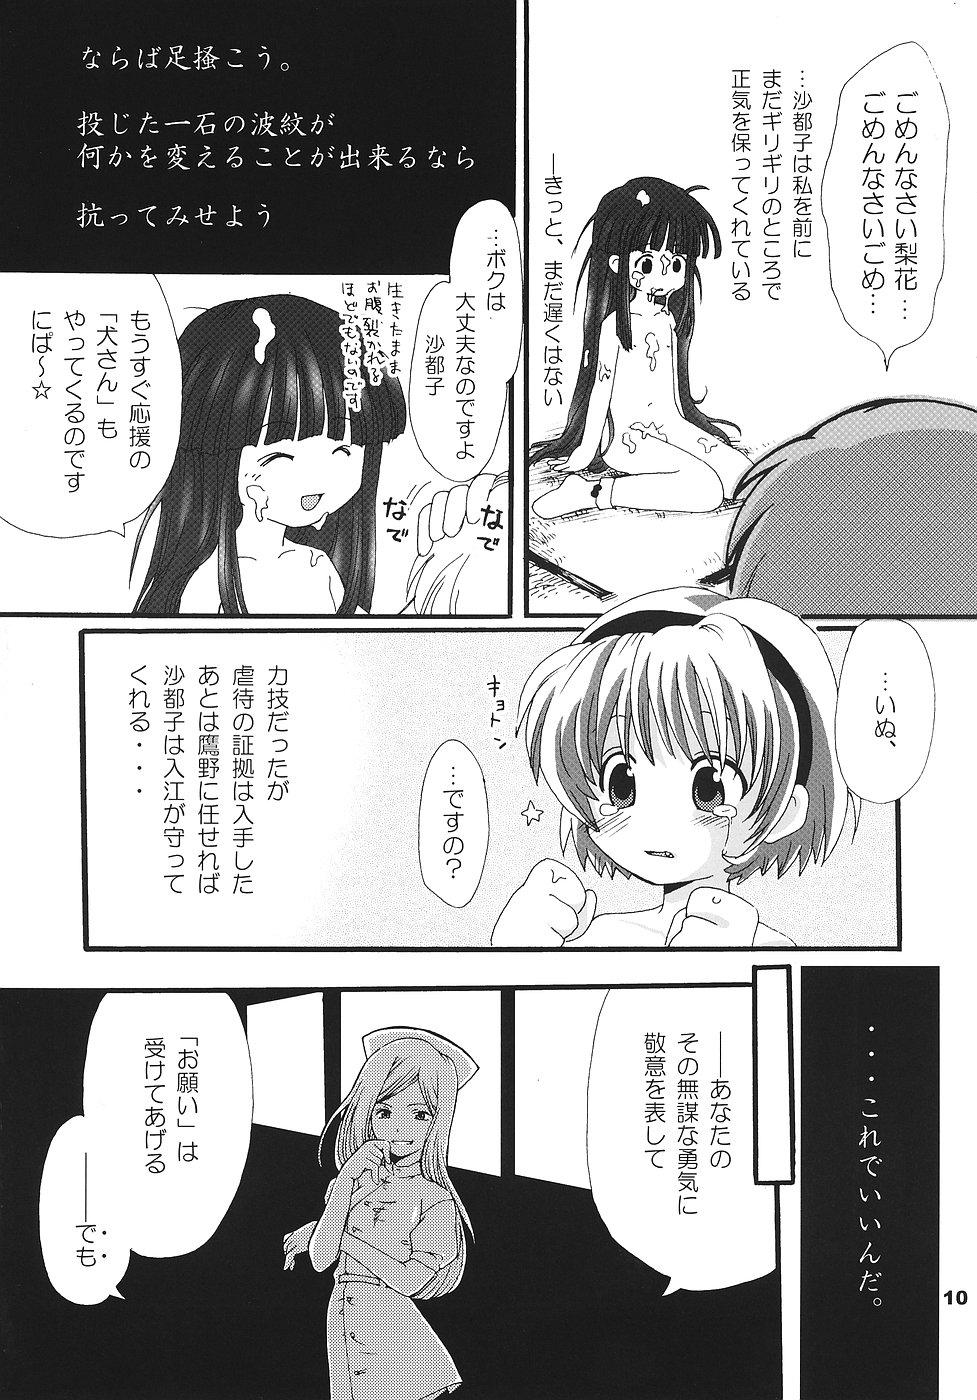 Doggie Style Porn Higurashi no Koe, Ima wa Tae - Higurashi no naku koro ni Asians - Page 9